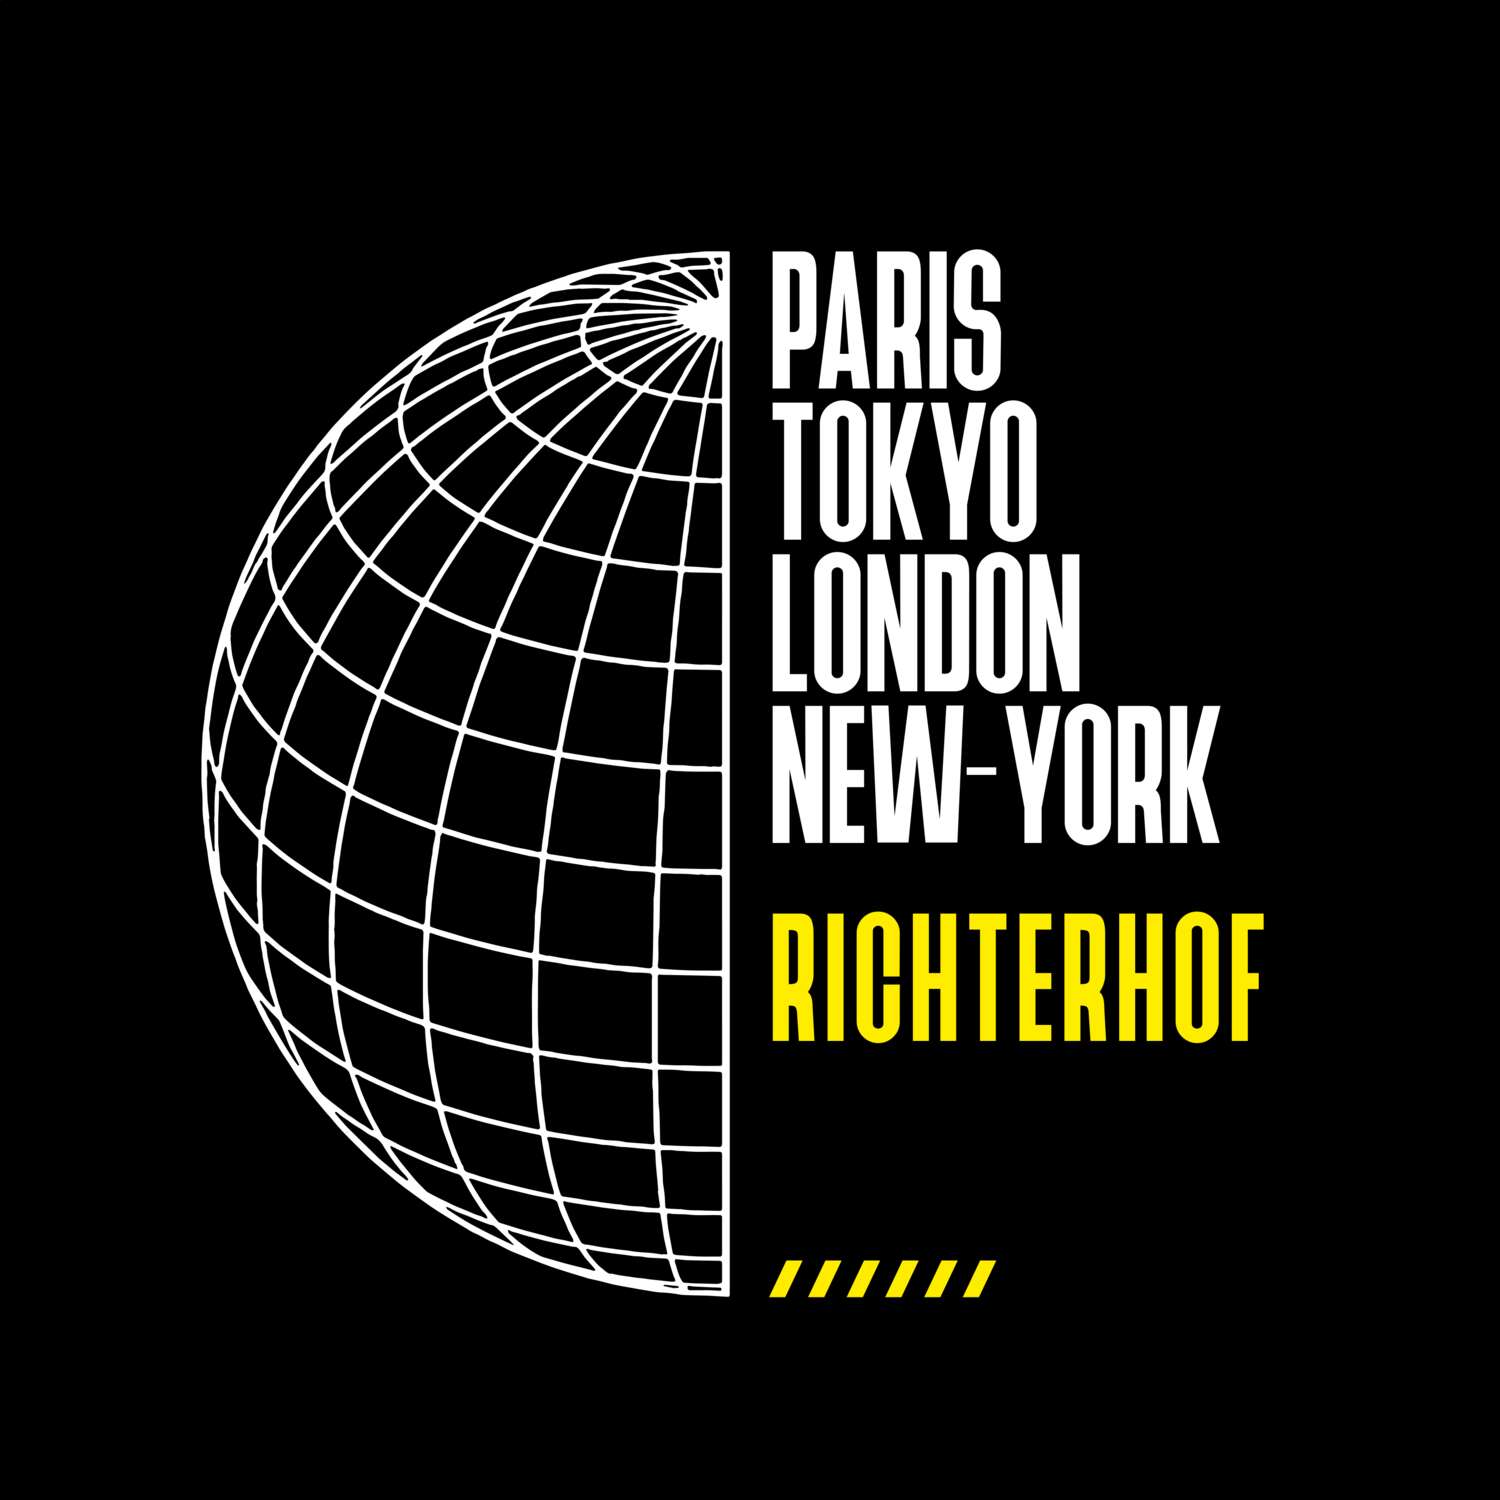 Richterhof T-Shirt »Paris Tokyo London«